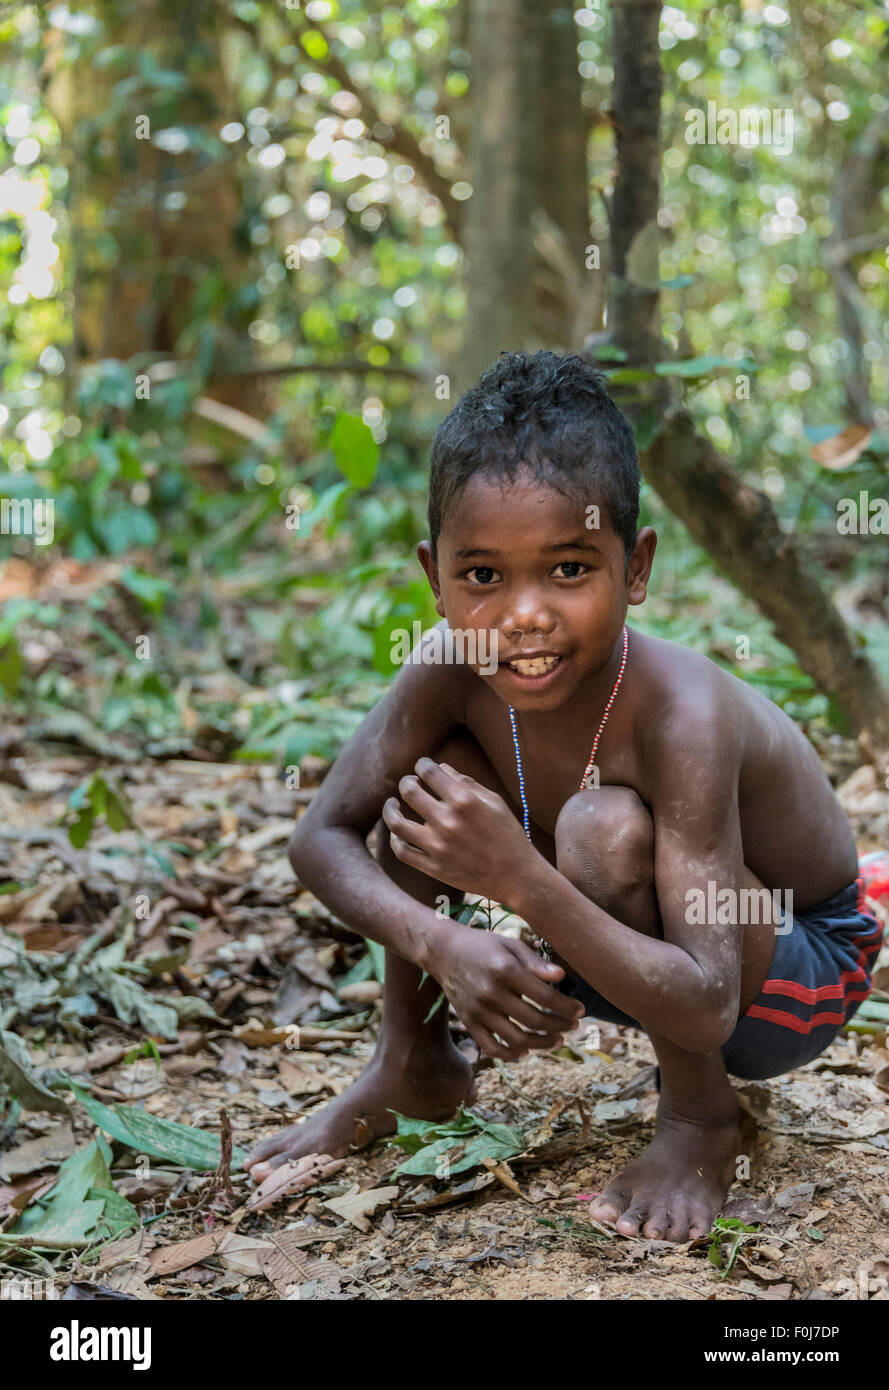 Petit garçon de la tribu Orang Asil grimaçantes, accroupis sur le sol dans la jungle, les autochtones, les communautés autochtones Volk Banque D'Images